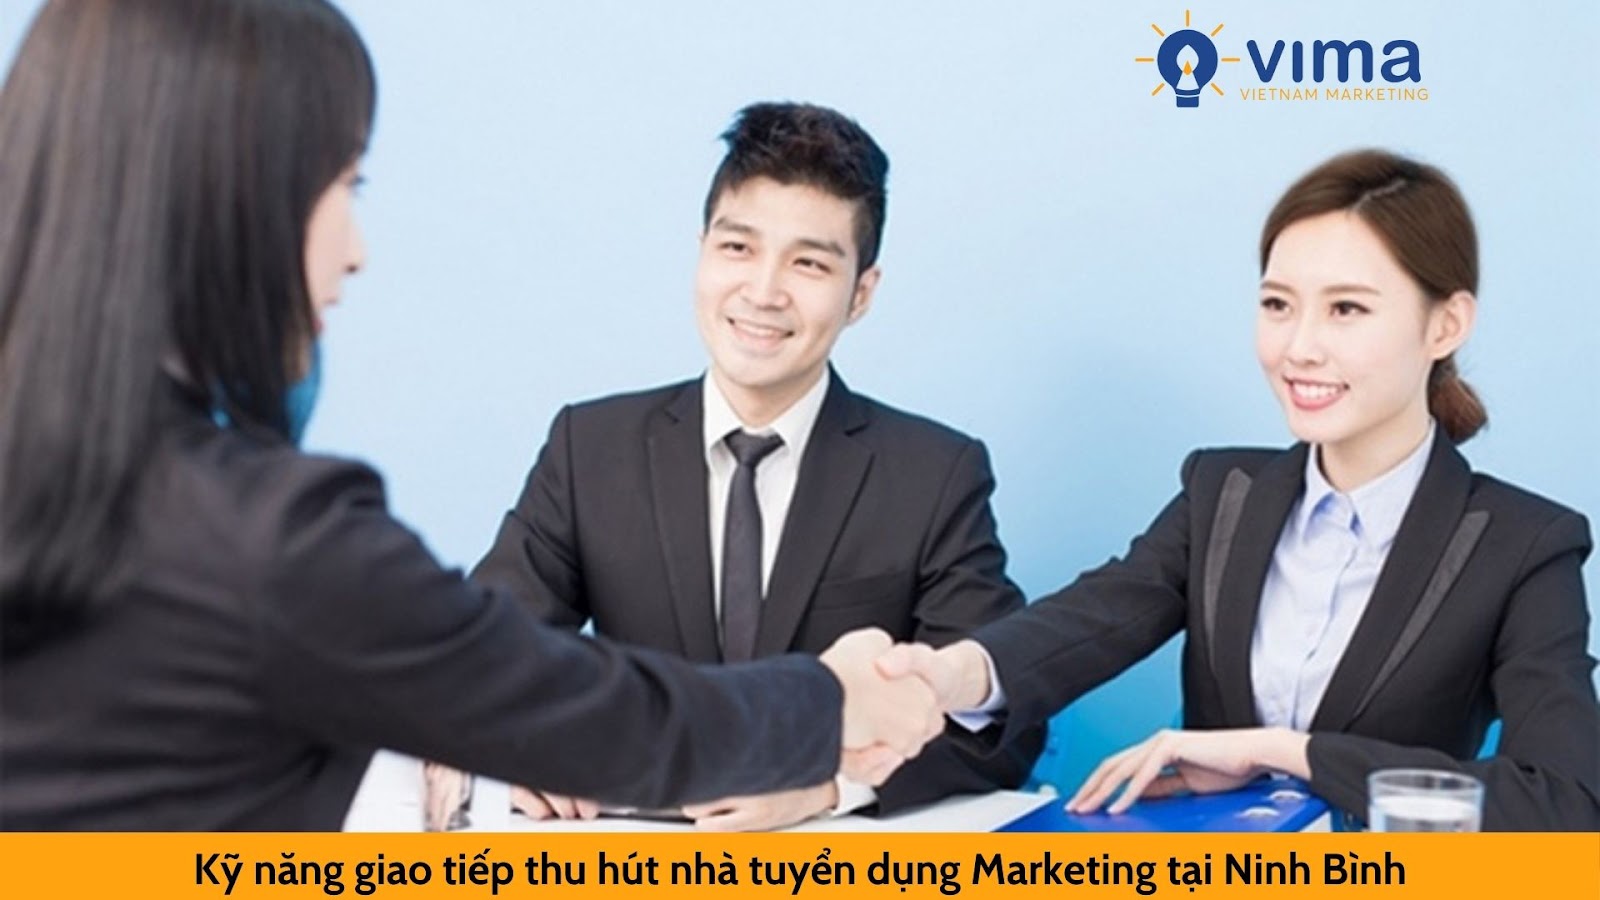 Kỹ năng chinh phục nhà tuyển dụng Marketing tại Ninh Bình